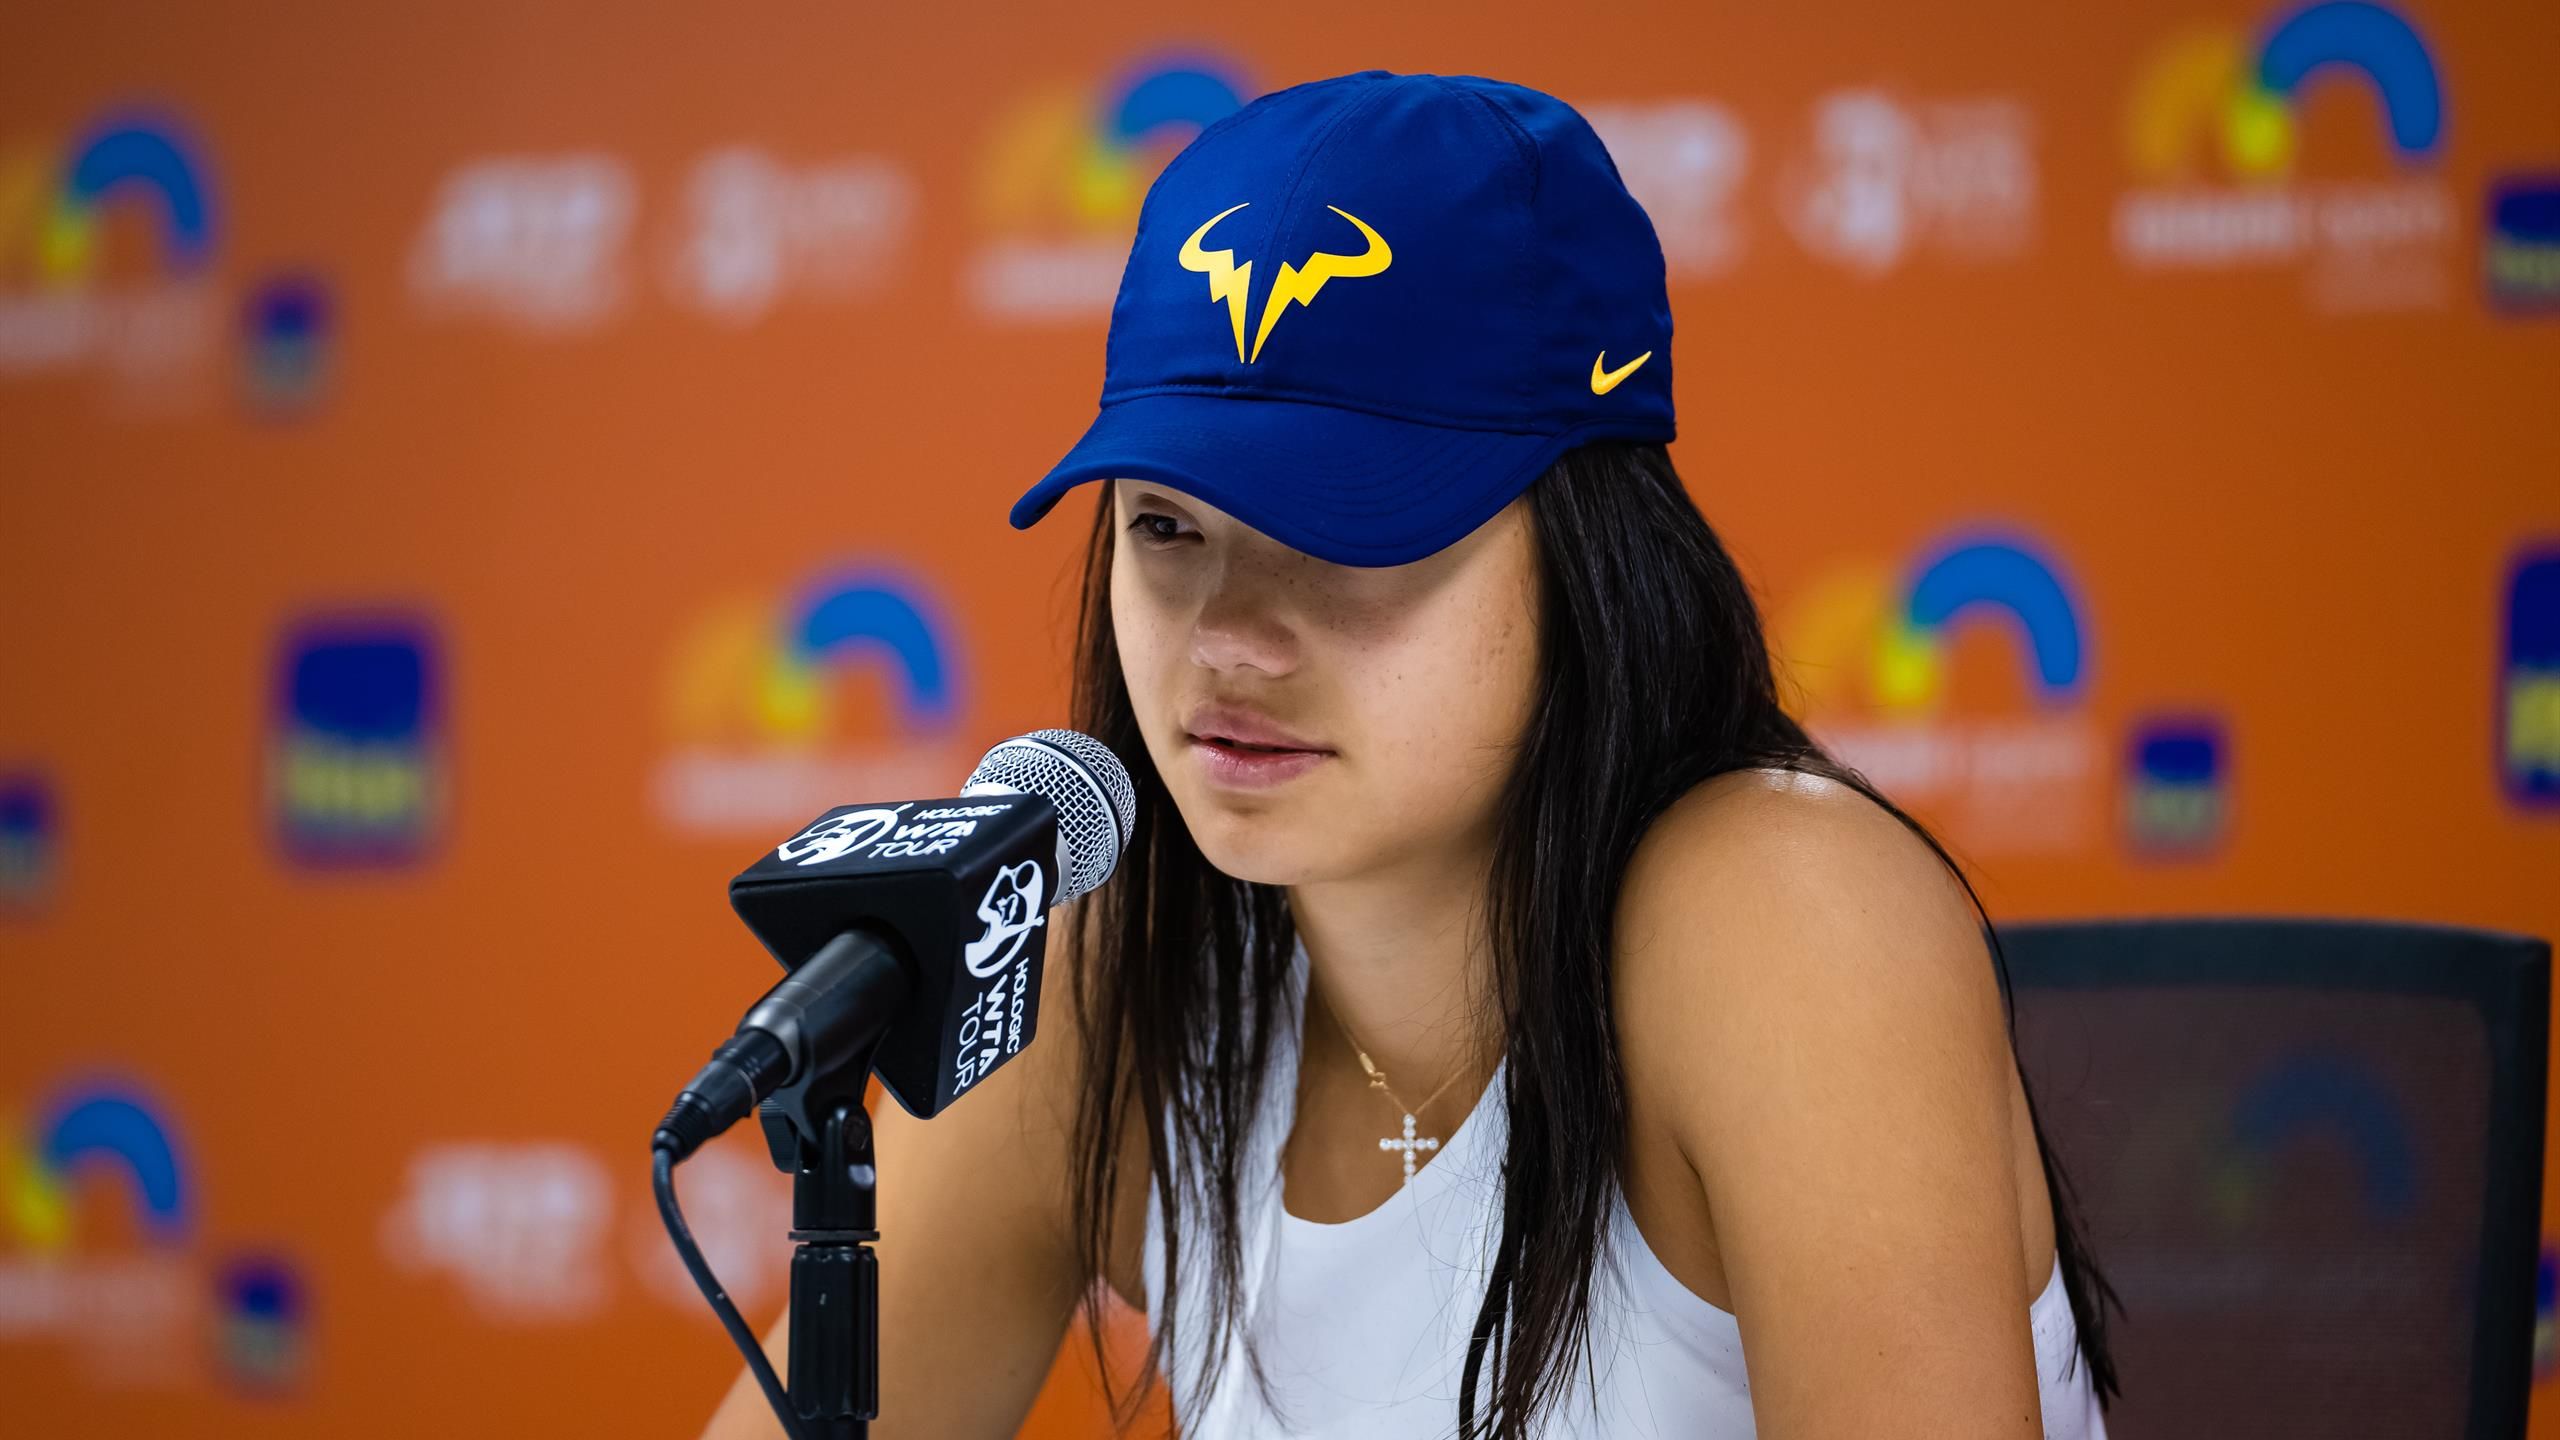 Tenis | Emma Raducanu, la reina de la publicidad que luce las gorras... ¡de - Eurosport